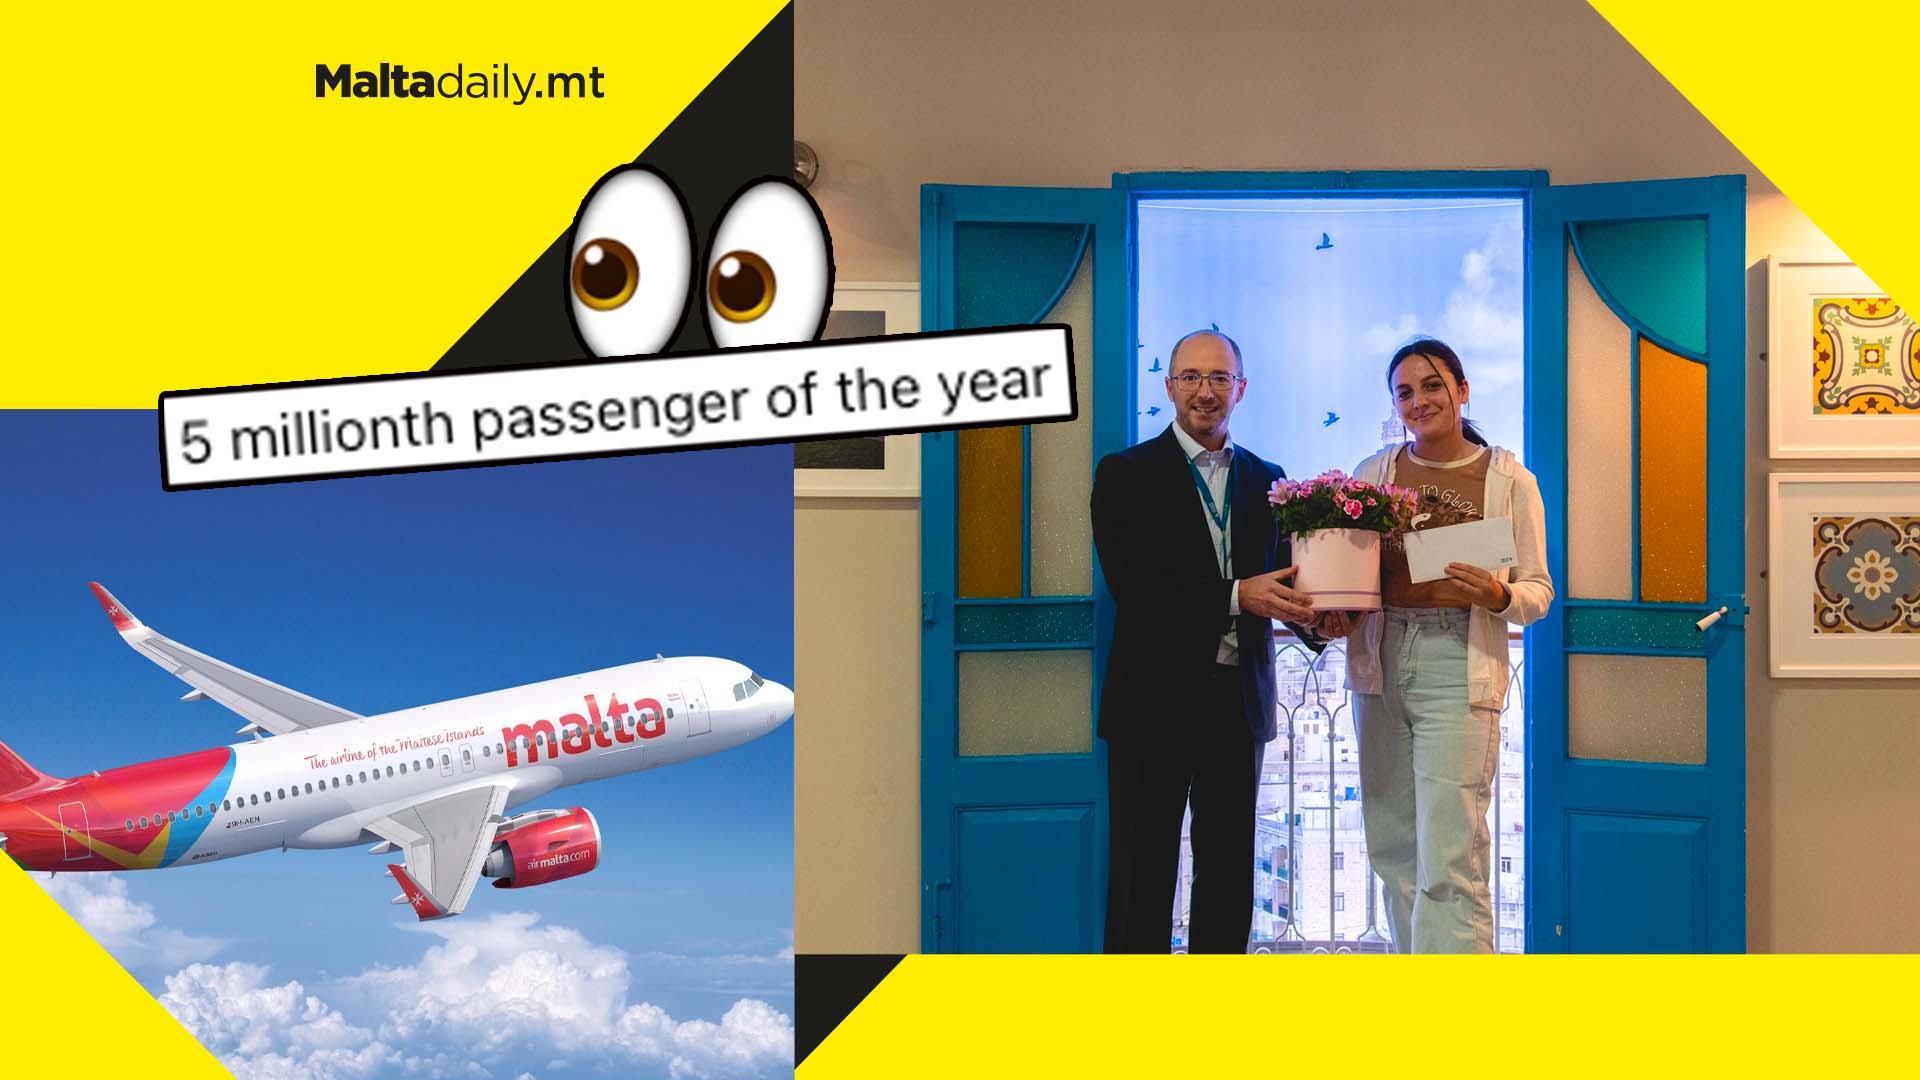 Malta Airport surprises 5 millionth AirMalta passenger of 2022